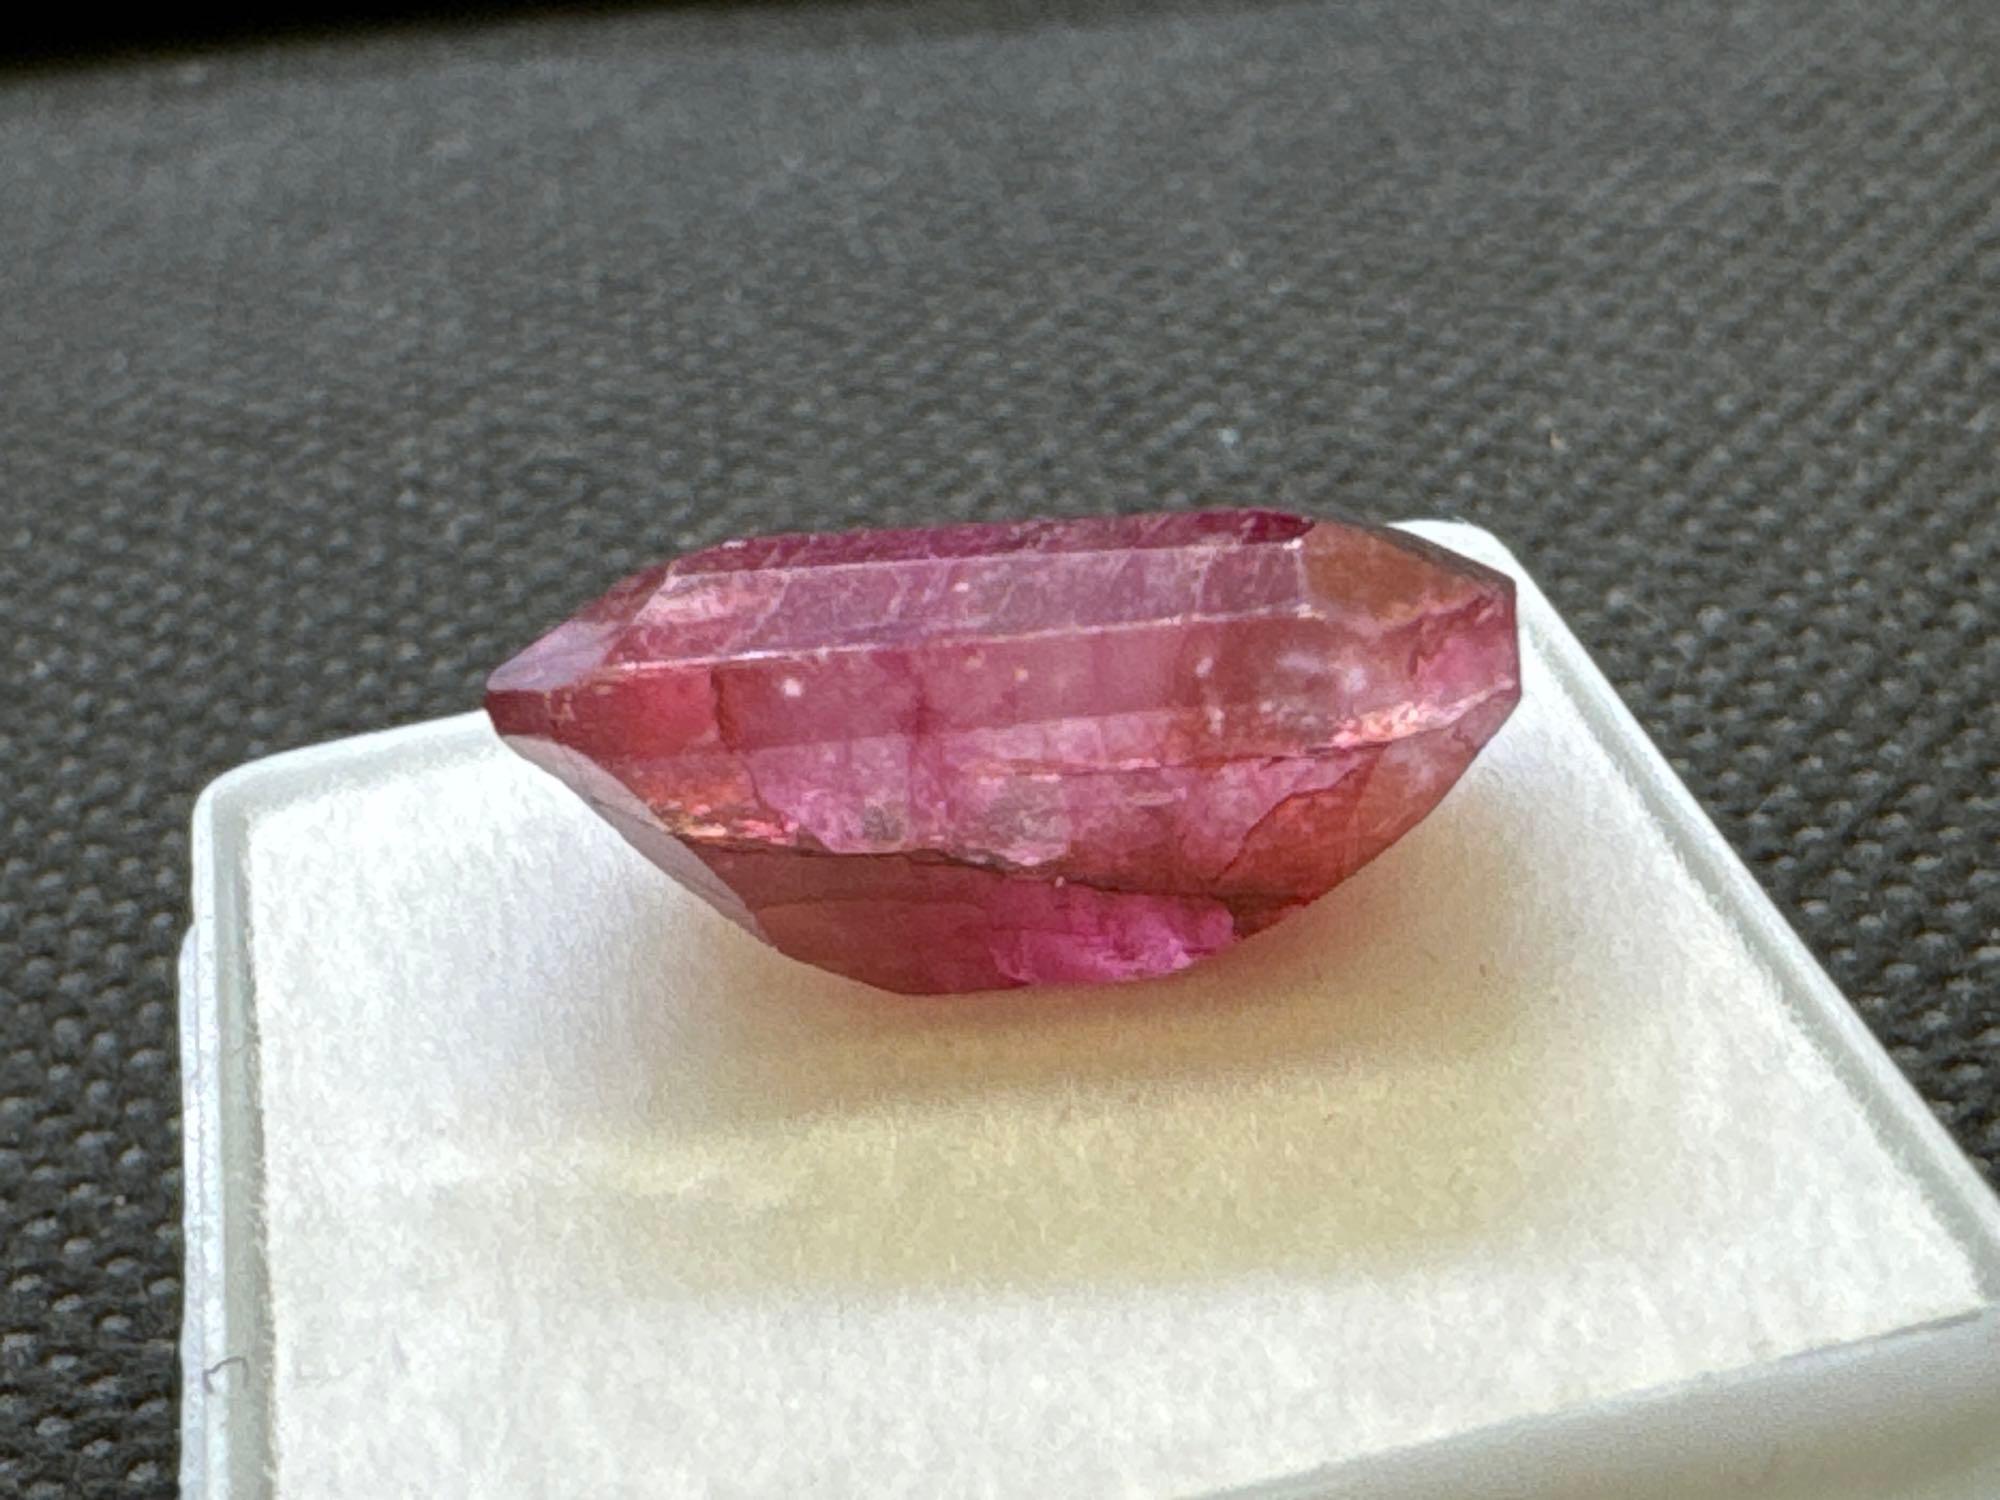 Emerald Cut Red Ruby Gemstone 14.85Ct